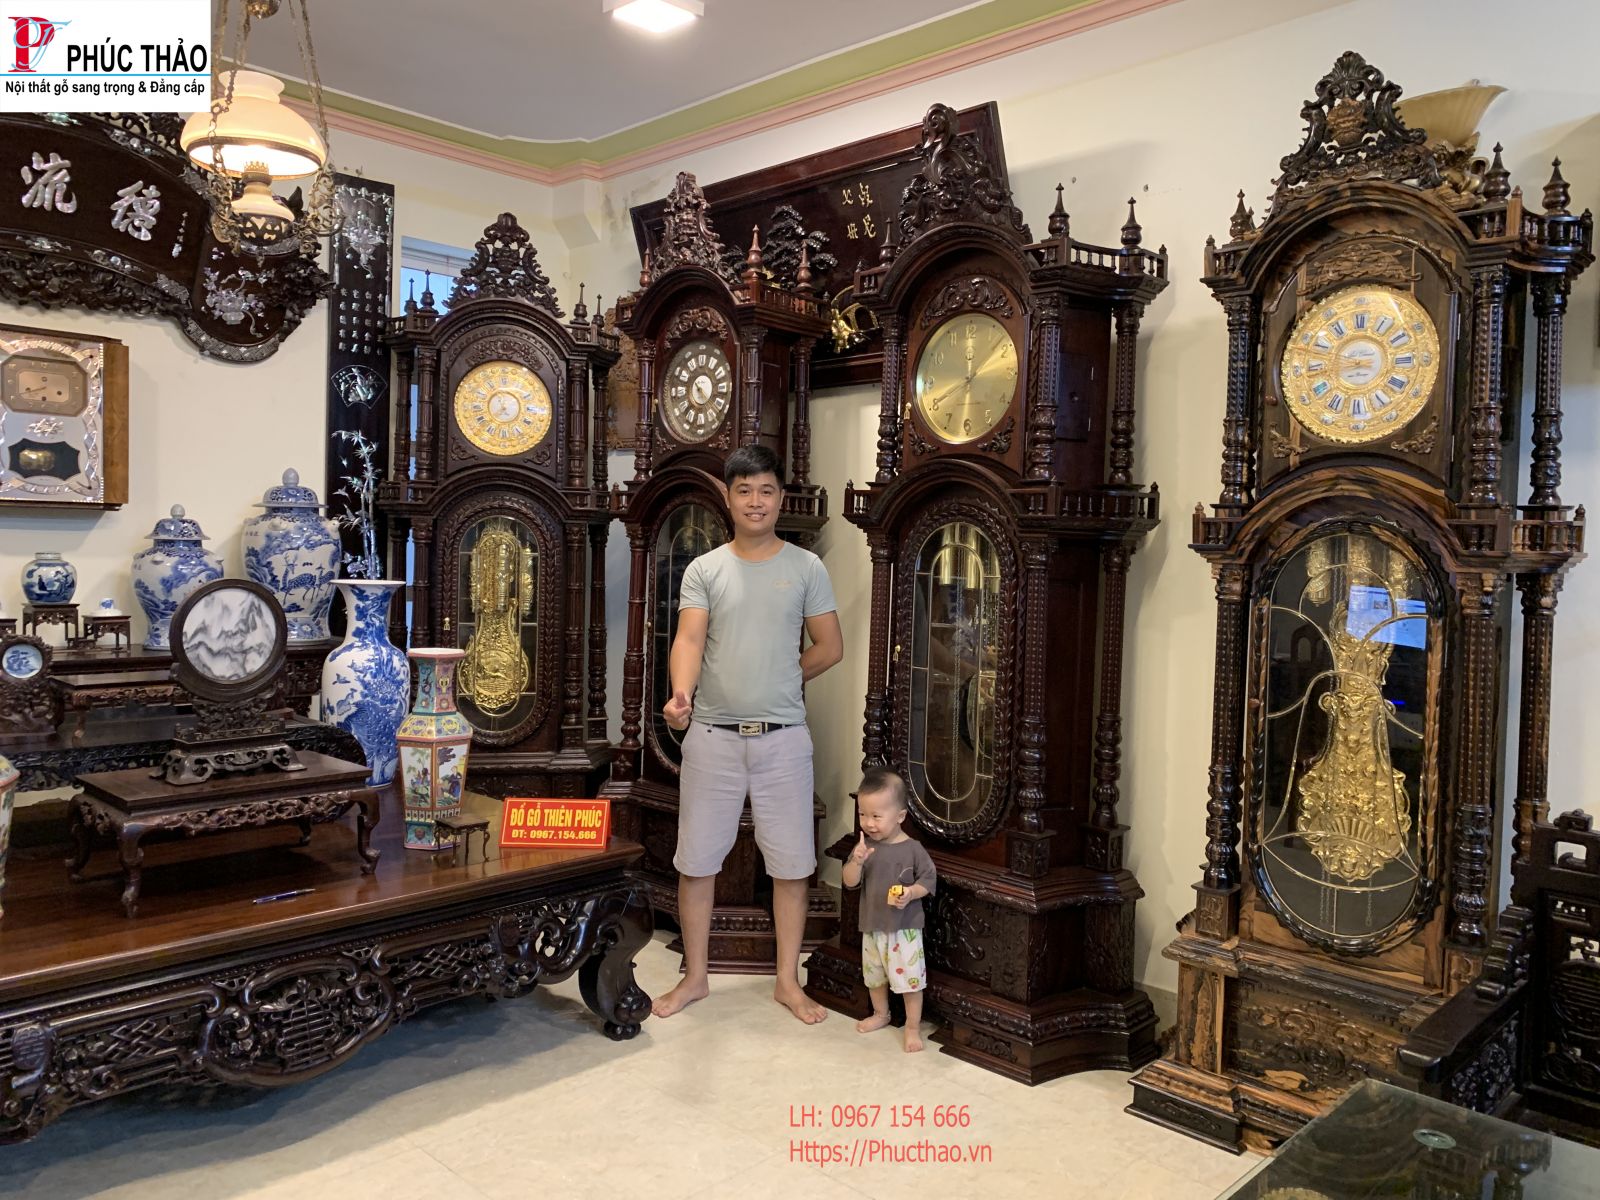 Mua đồng hồ cây gỗ uy tín ở Lâm Đồng tại Phúc Thảo